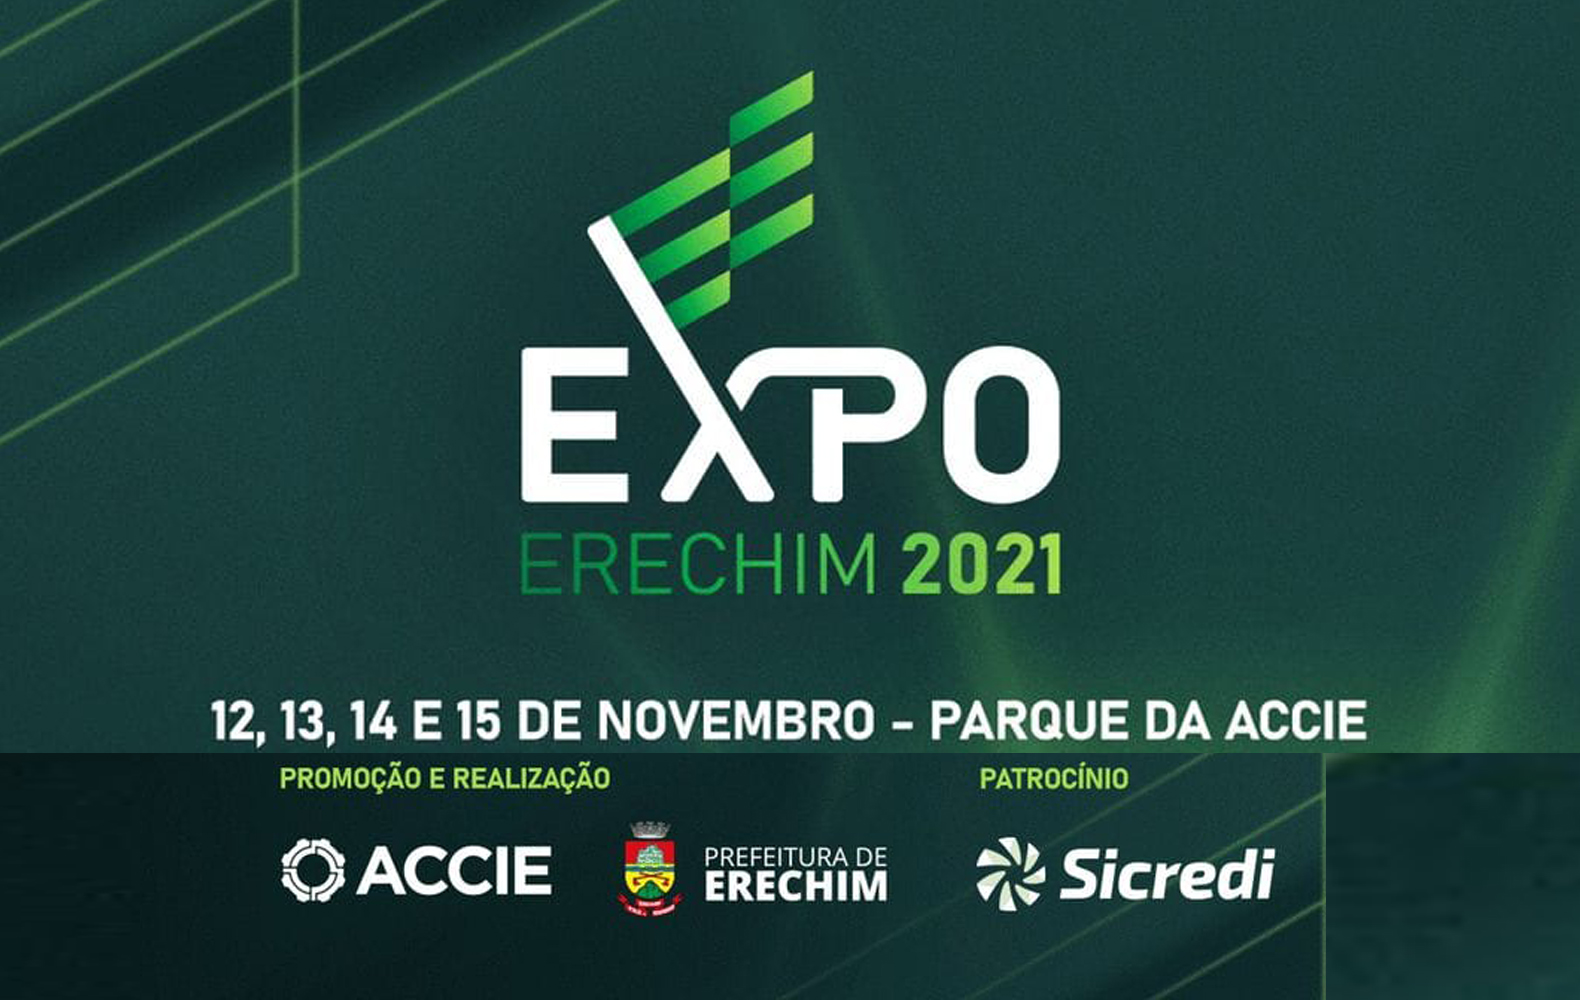  Expo Erechim 2021 ser? realizada de 12 a 15 de novembro